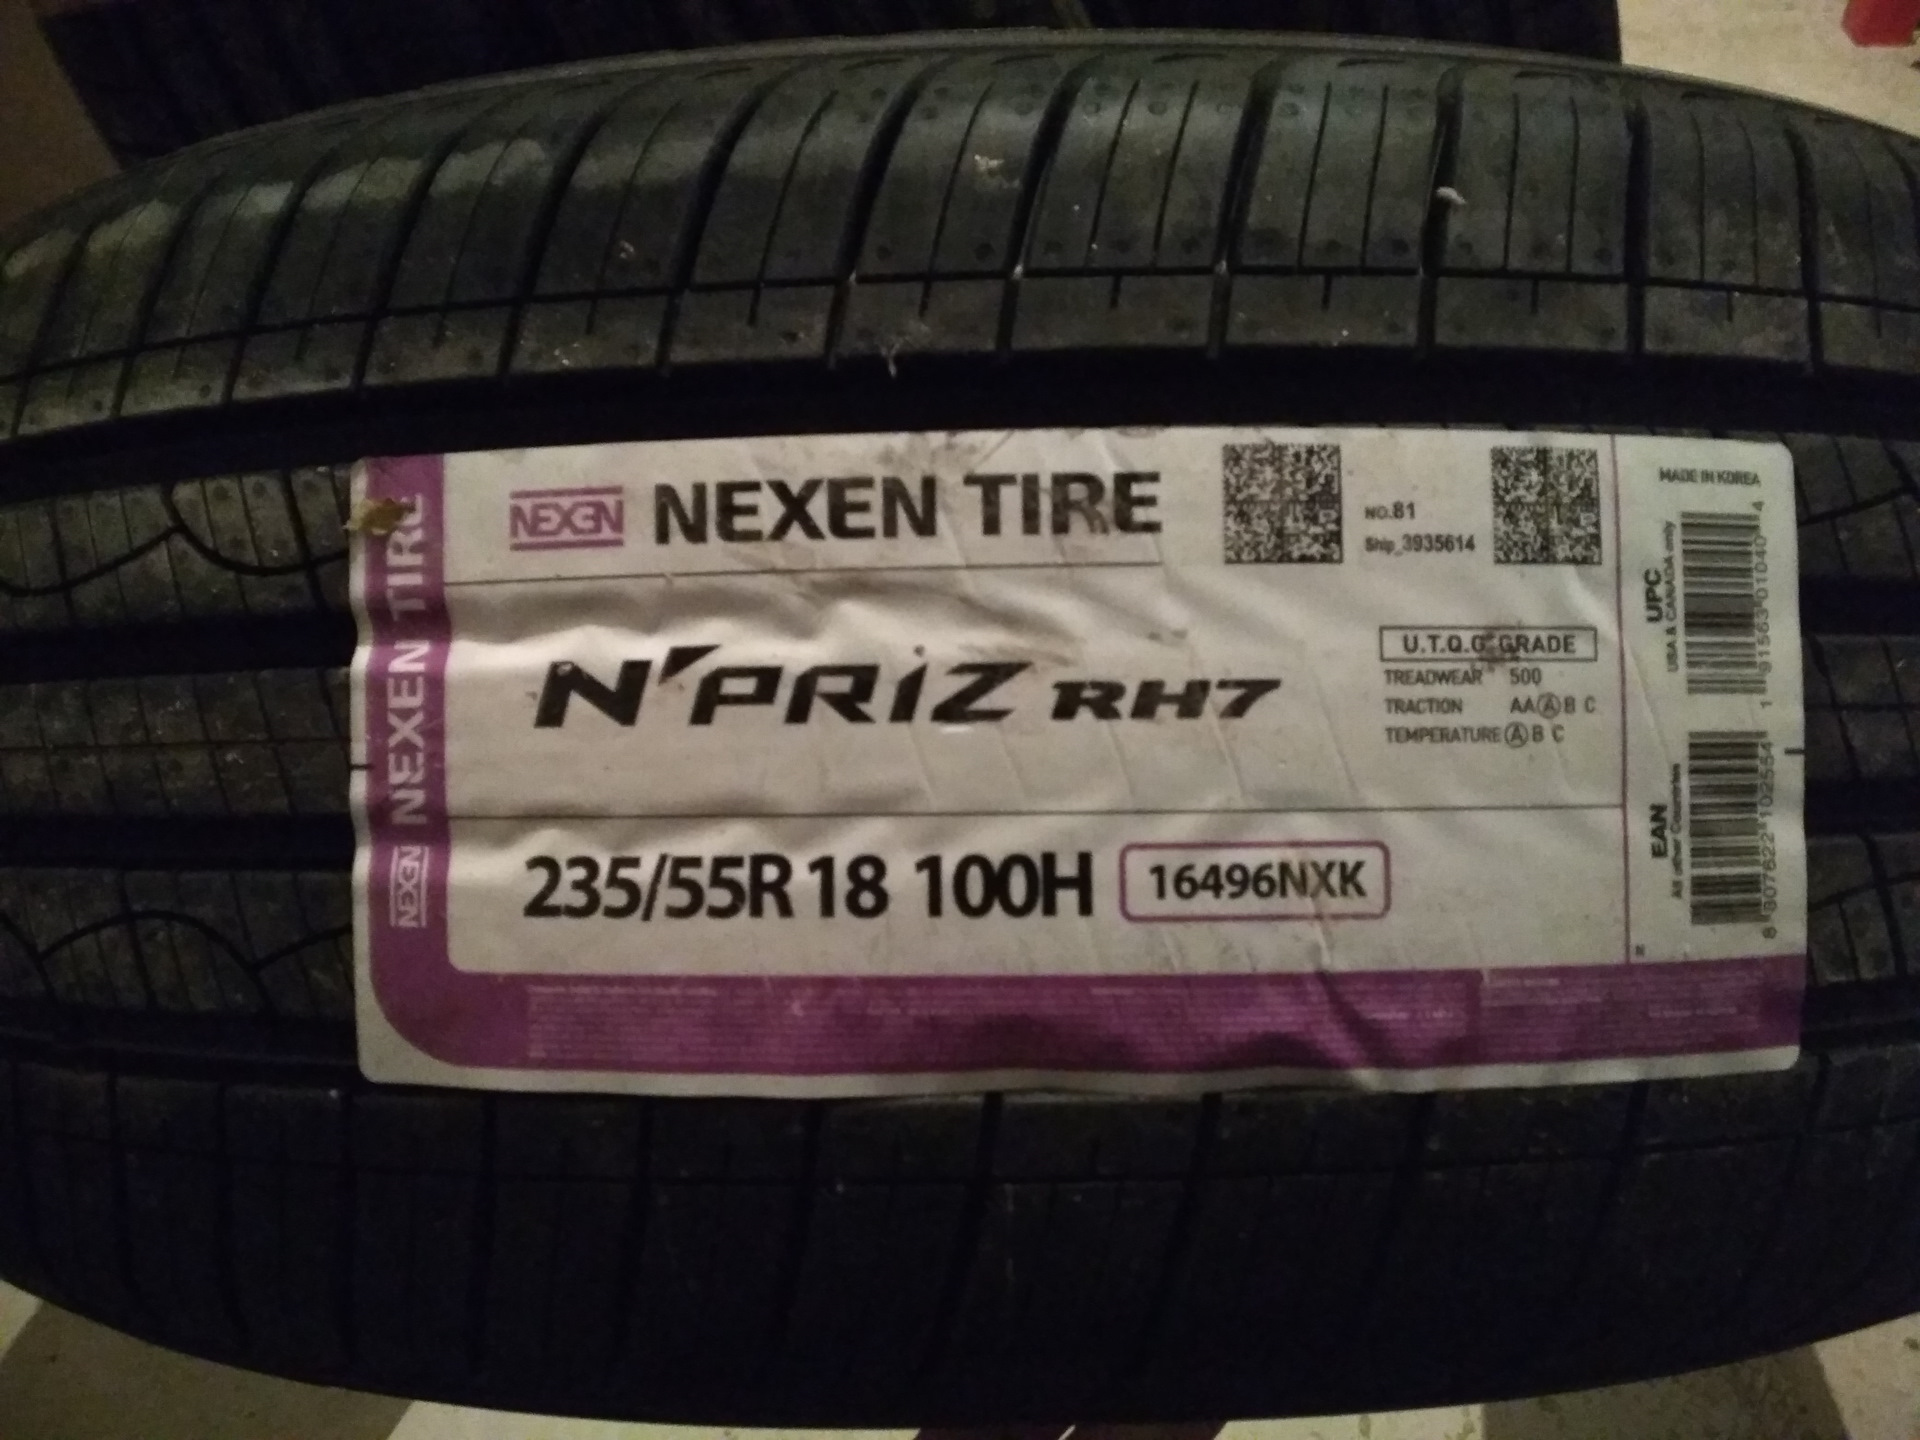 Nexen шины производство страна производитель. 225/55r18 Nexen n'Priz rh7 БК 98 H. Nexen шины Страна производитель. 235/60*18 103h Nexen n Priz rh7 (шт). Nexen n'Priz rh1 215/70r16 100h 14394 шт.